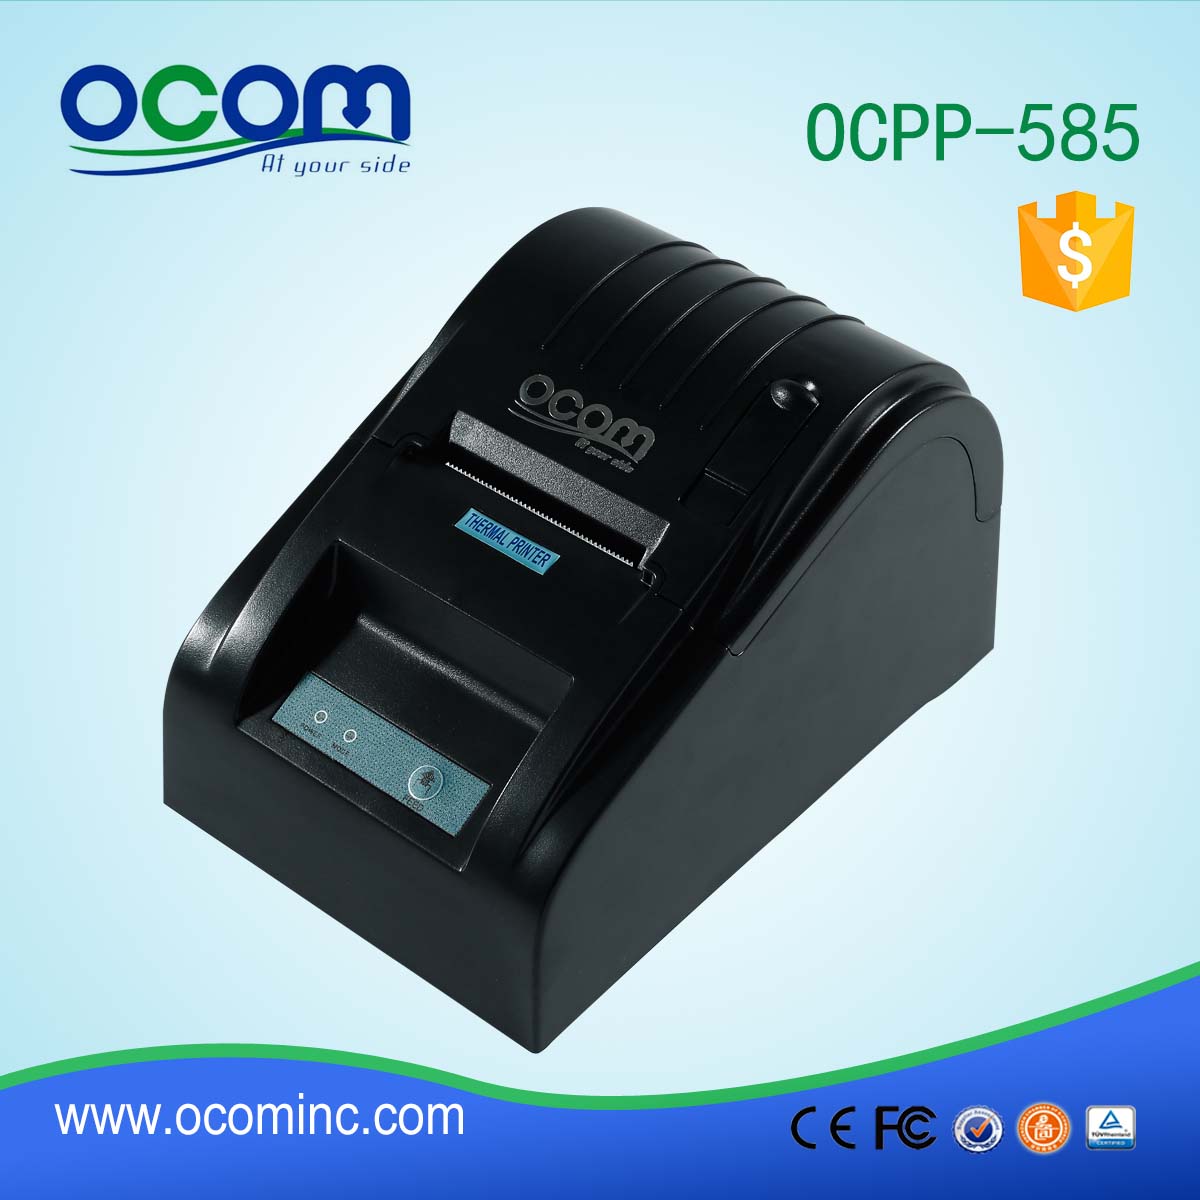 OCPP-585-P Impressora térmica de POS de alta qualidade de 58mm mais barata $ 17 por unidade